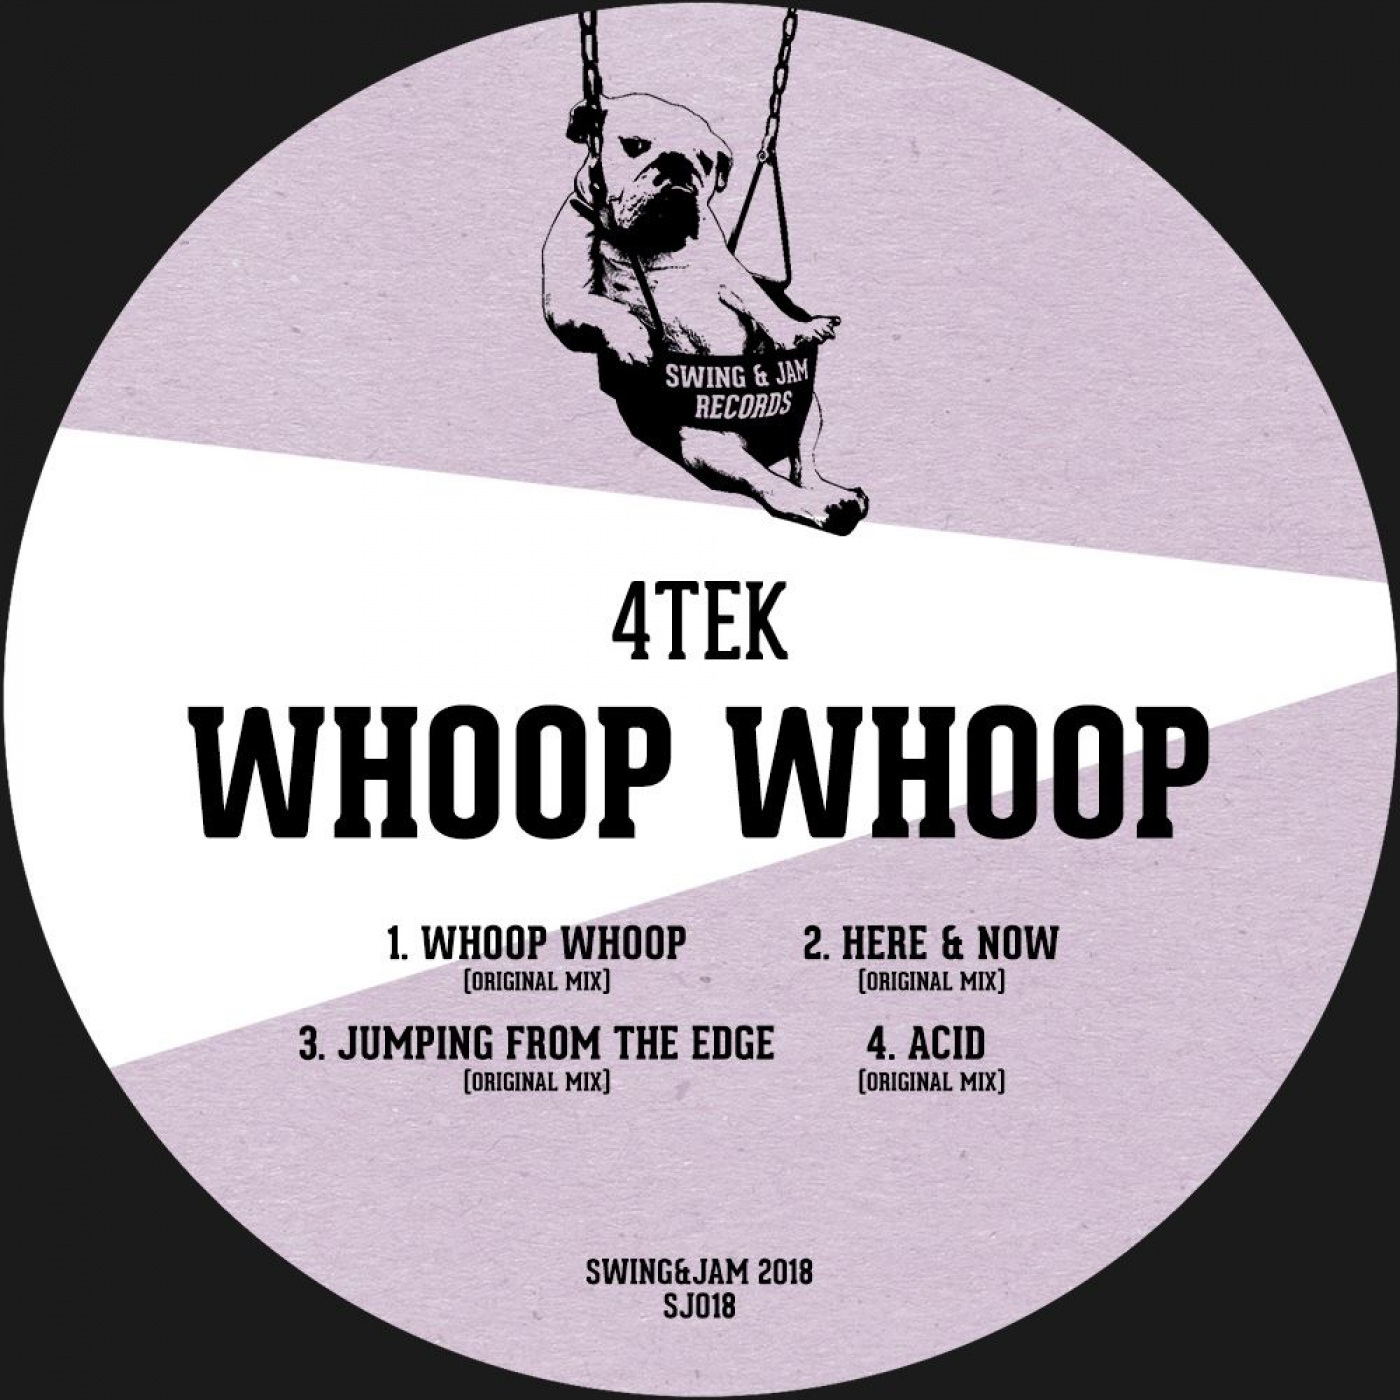 4Tek - Whoop Whoop / Swing & Jam Records